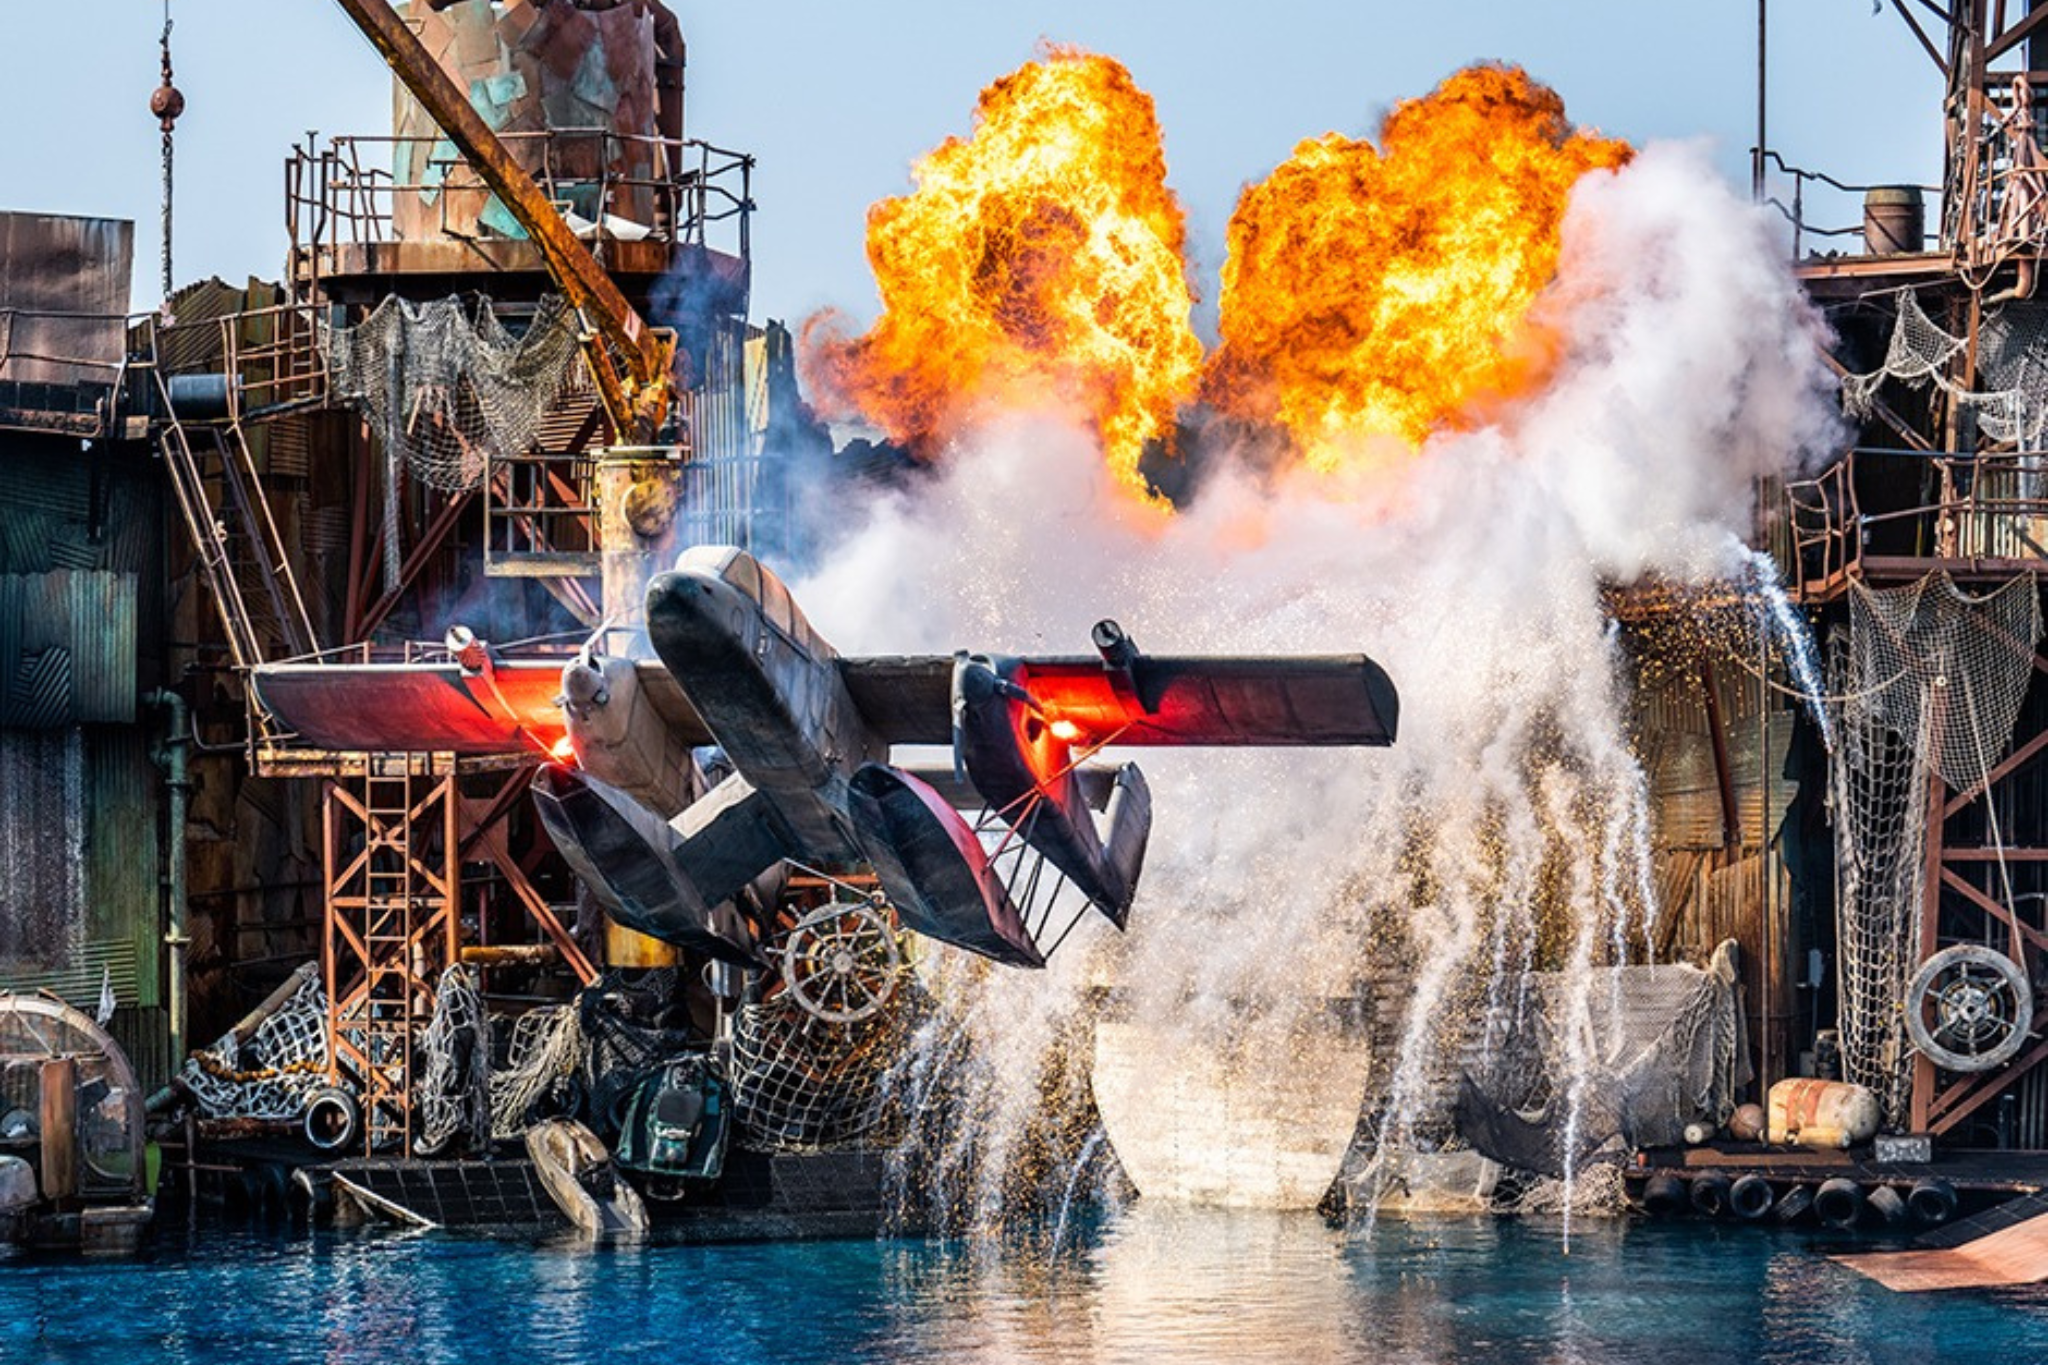 attrazione WaterWorld con aereo in fiamme agli Universal Studios Hollywood